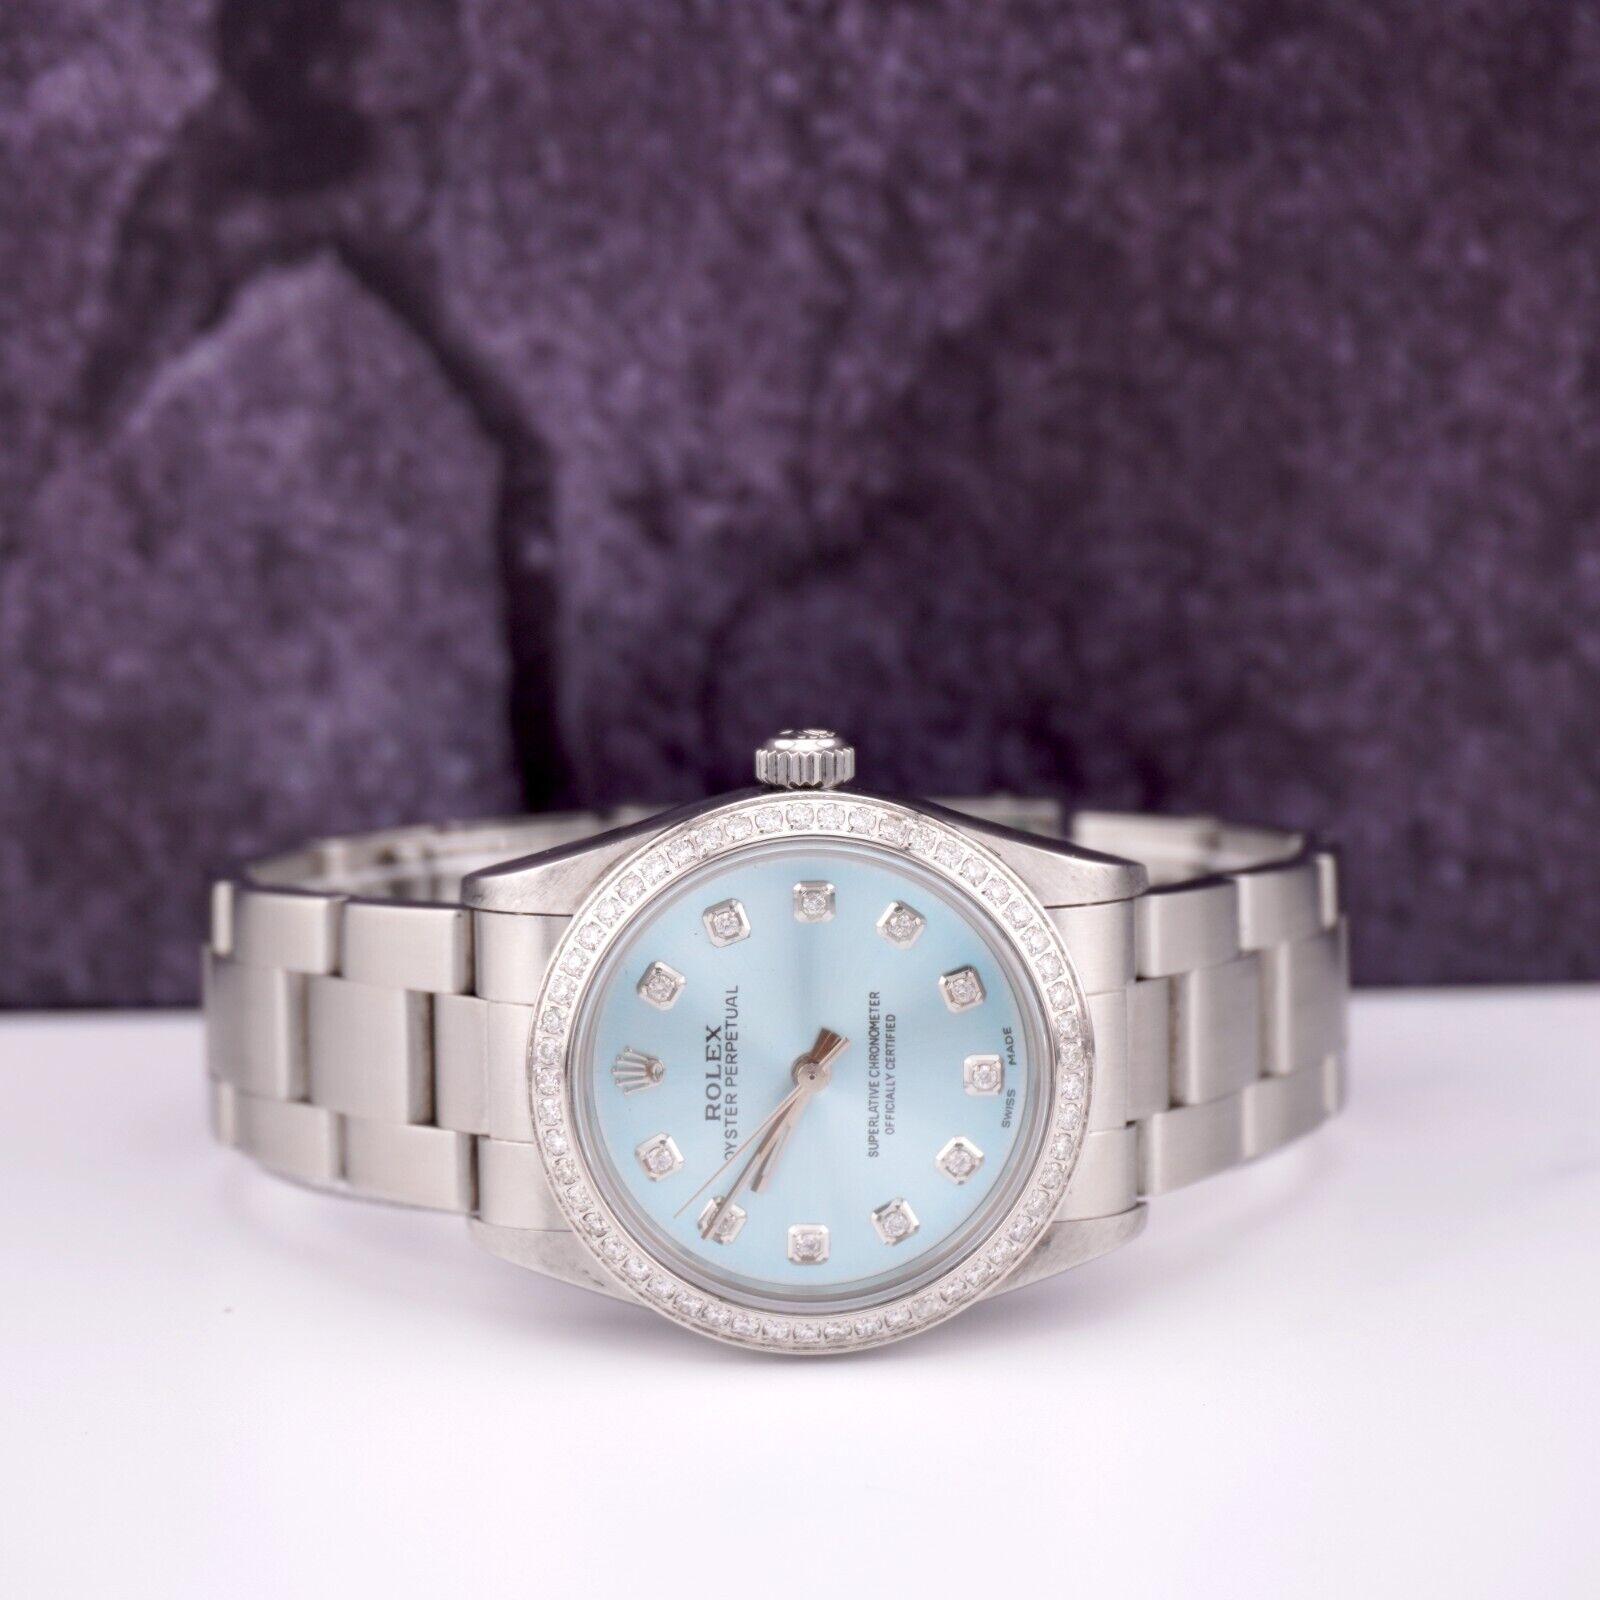 Montre Rolex Oyster Perpetual 31mm personnalisée avec 1,75 carats de diamants véritables. Toute la montre est authentique Seuls le cadran et la lunette en diamants personnalisés sont ajoutés. L'ensemble de la lunette et du cadran a été